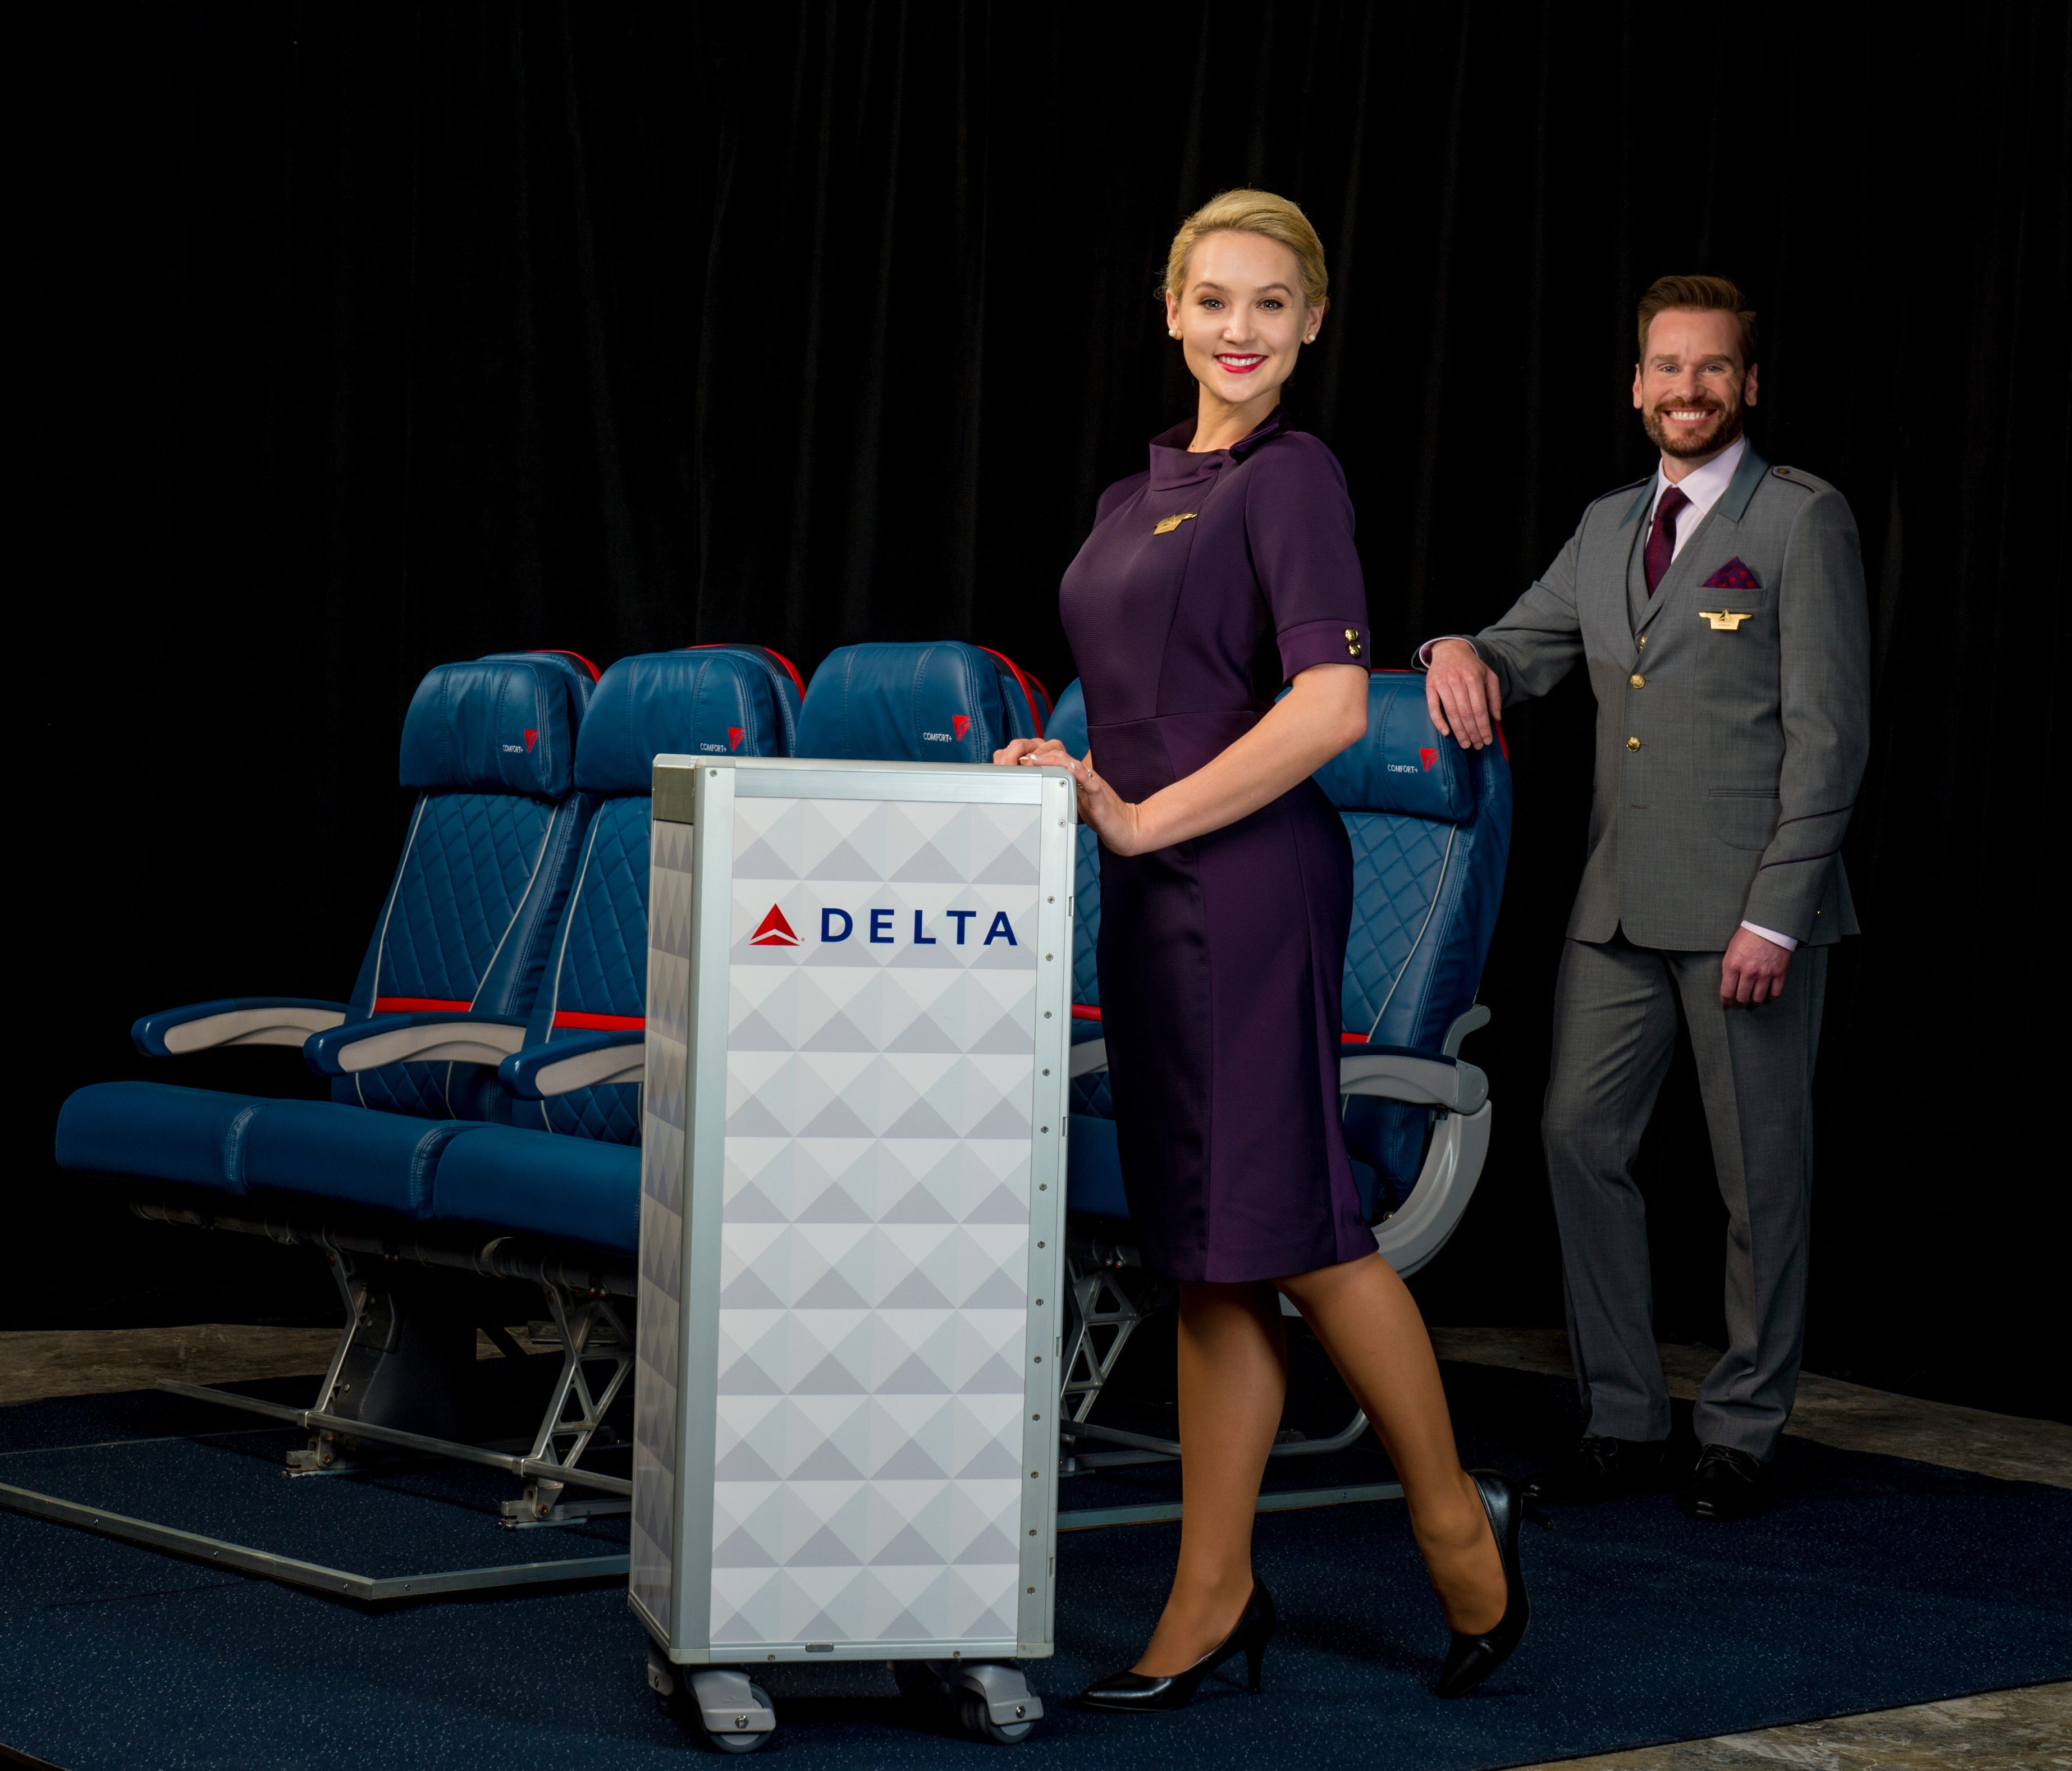 The new Delta flight attendant uniforms.